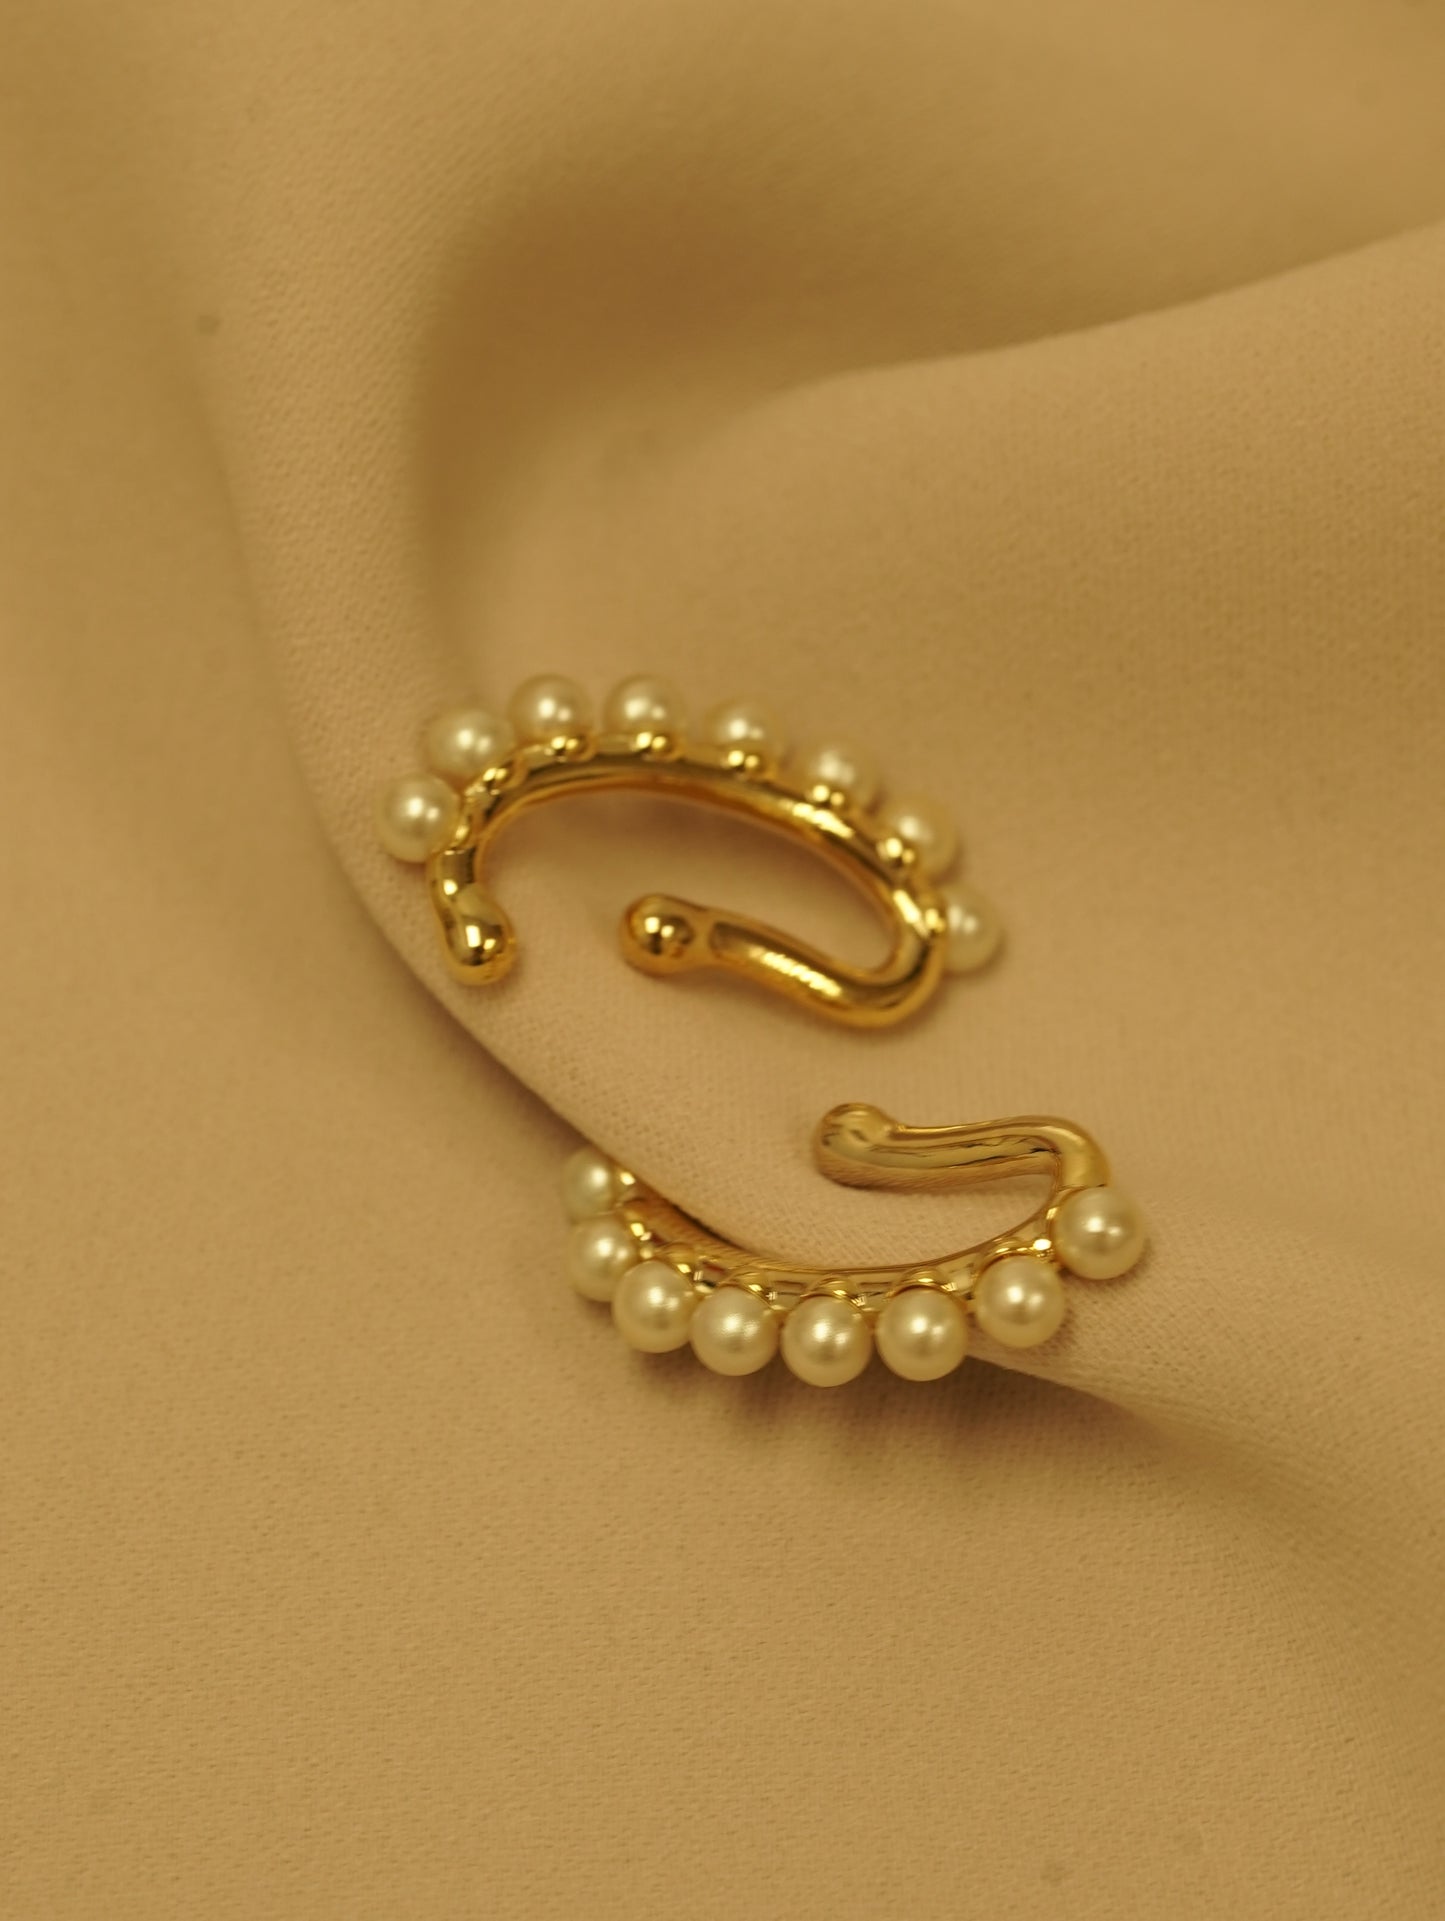 Beau- 鉤形珍珠耳環